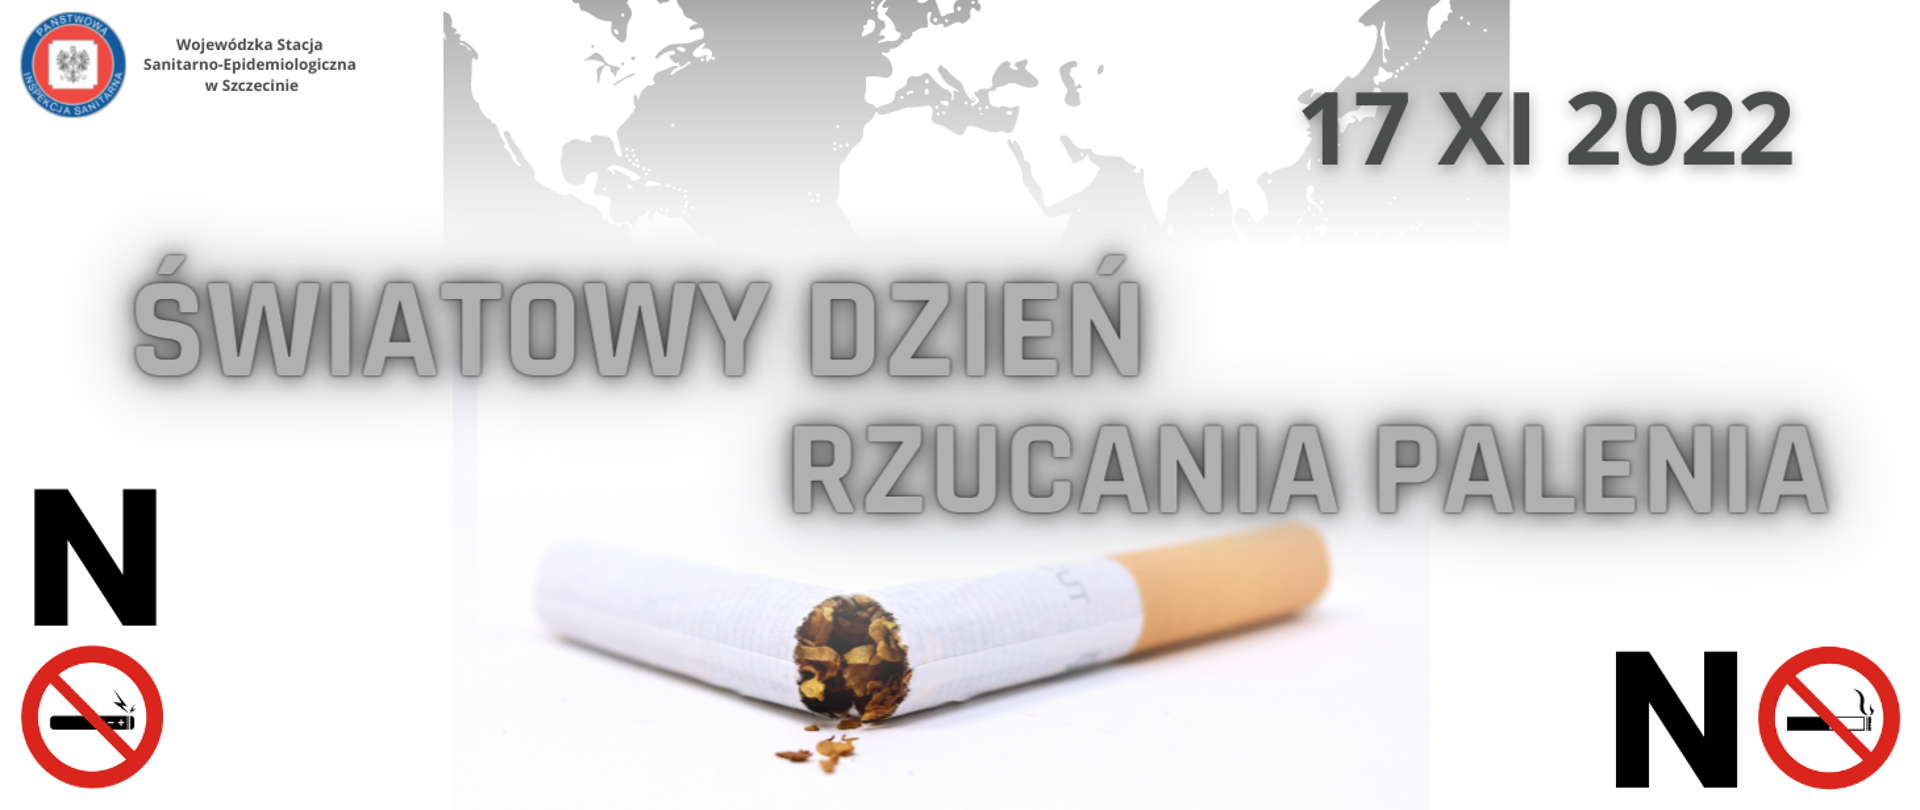 Hasło Światowy Dzień Rzucania Palenia, data 17.11.2022 oraz znaki zakazu palenia i używania e-papierosów